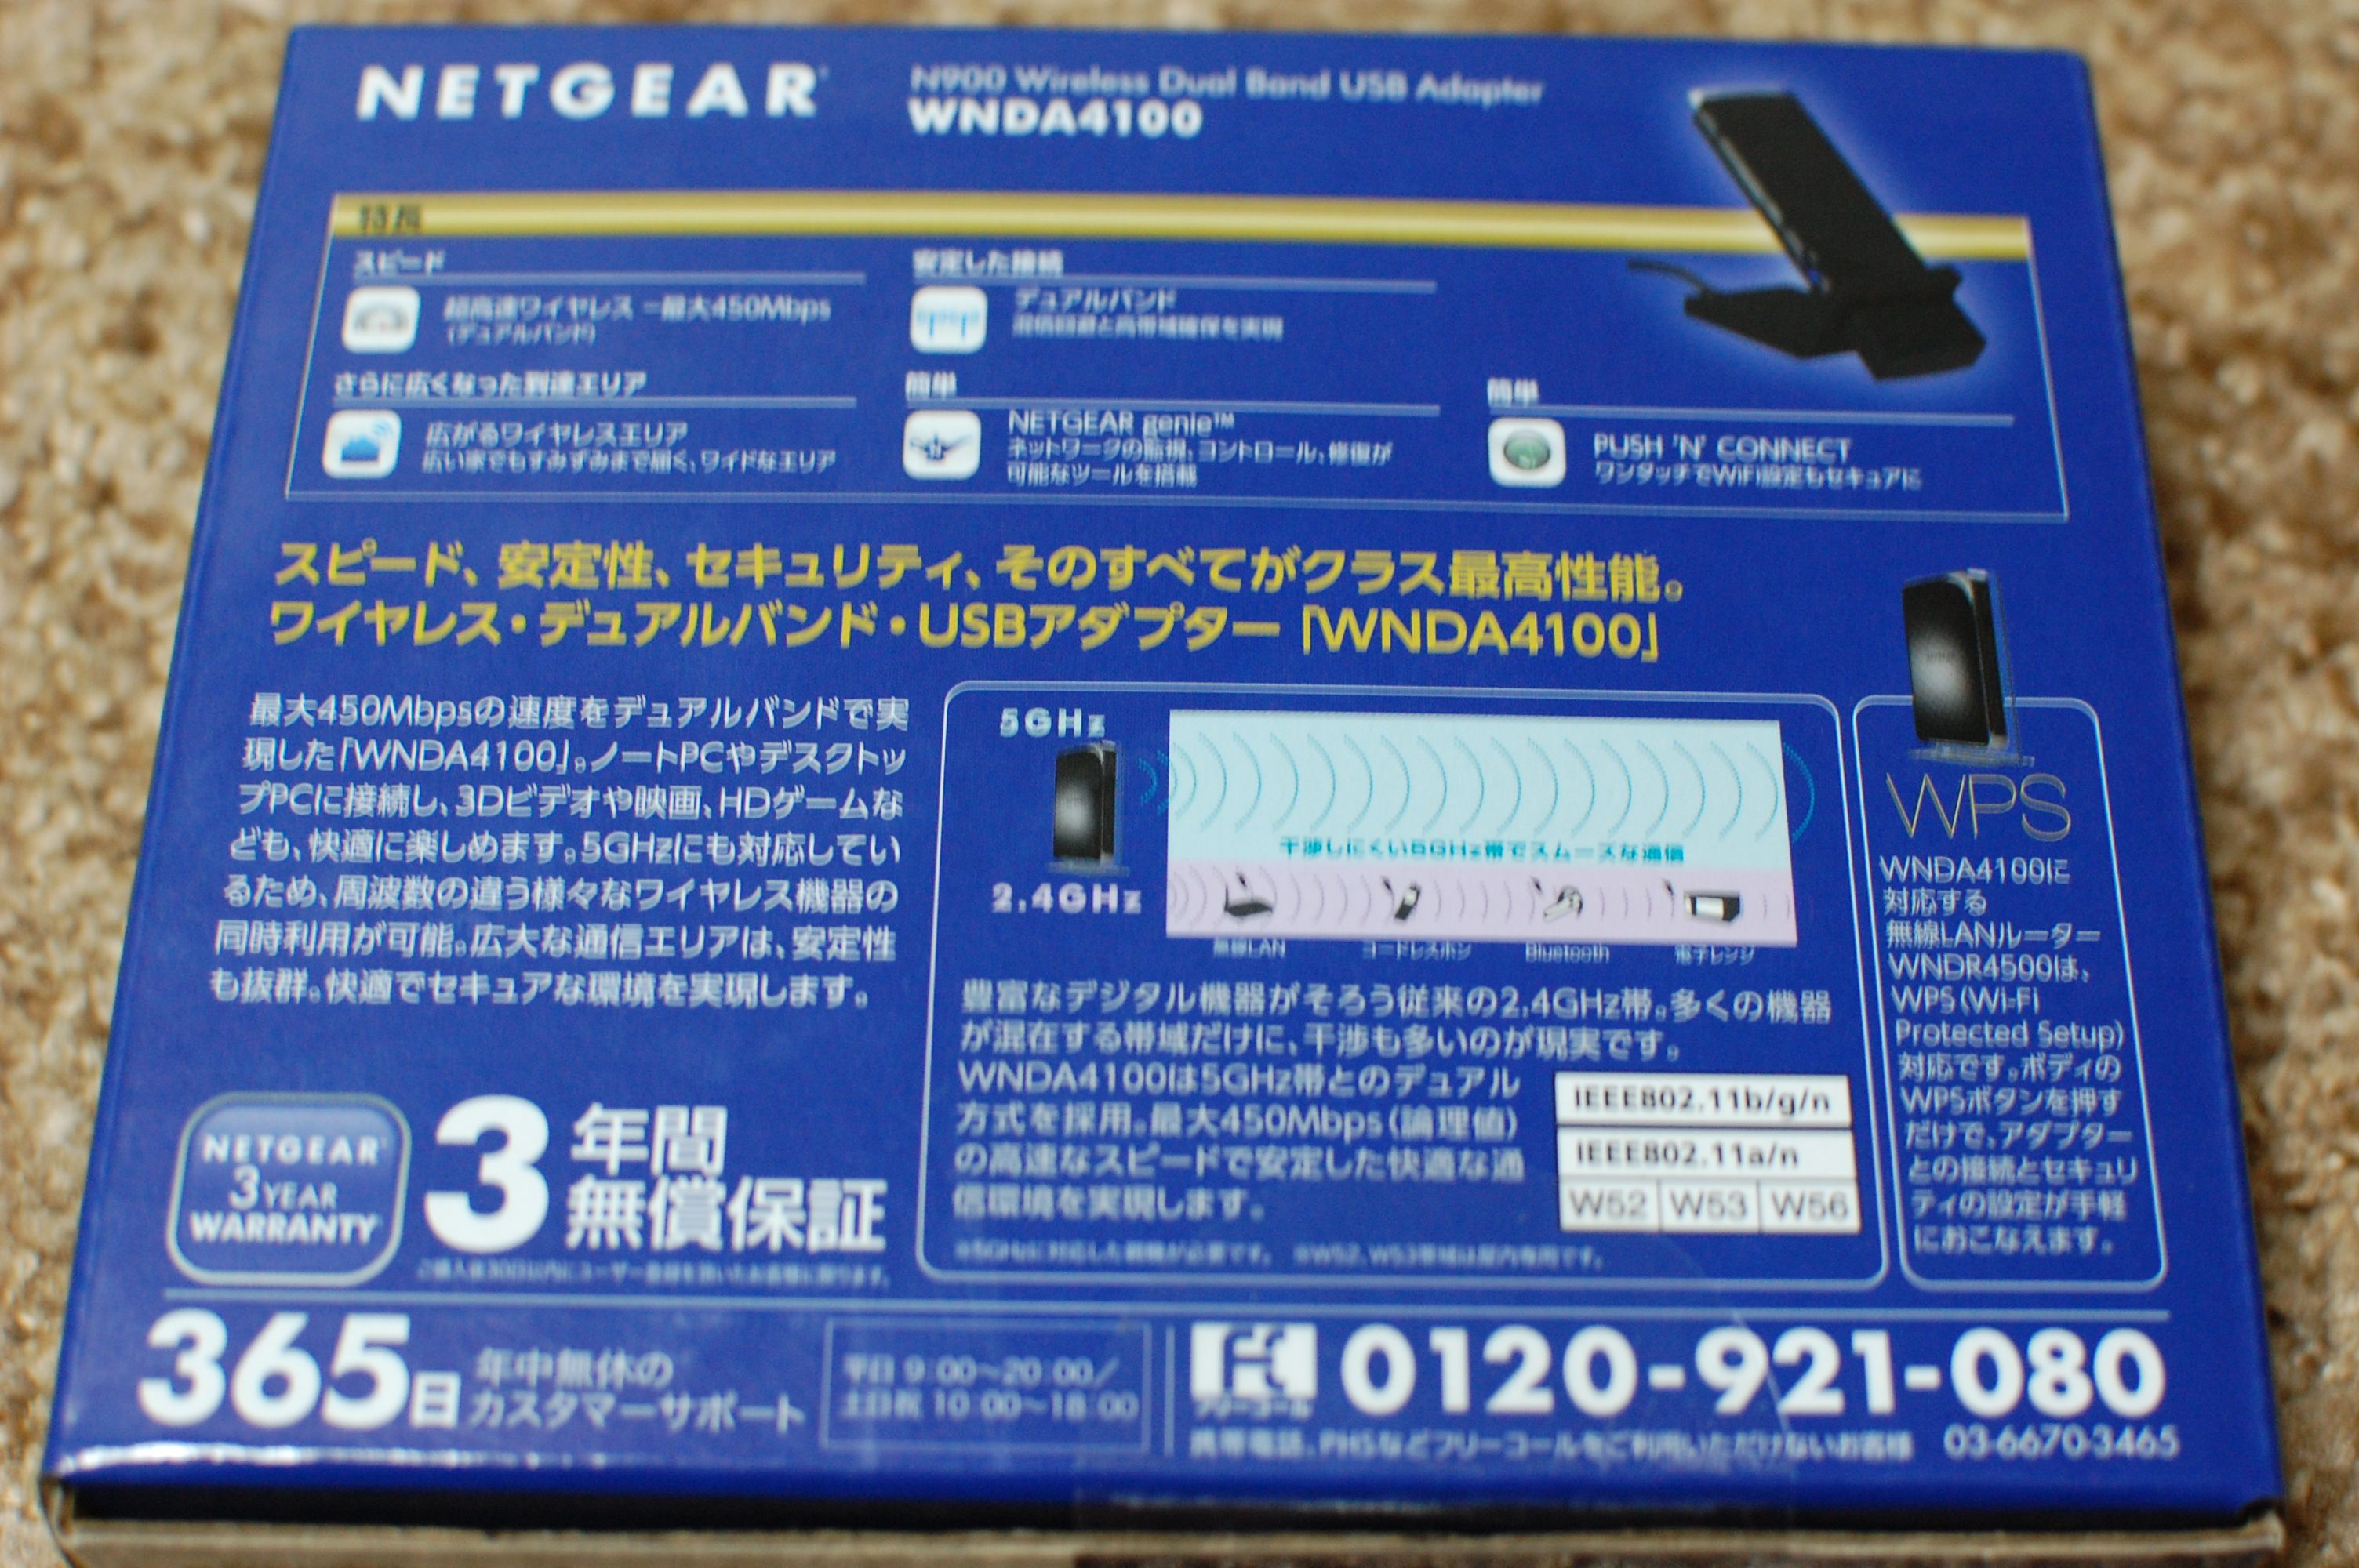 NETGEAR ワイヤレス デュアルバンド USB アダプター WNDA4100-100JPS | にーまるろく あーるしー どっと ねっと